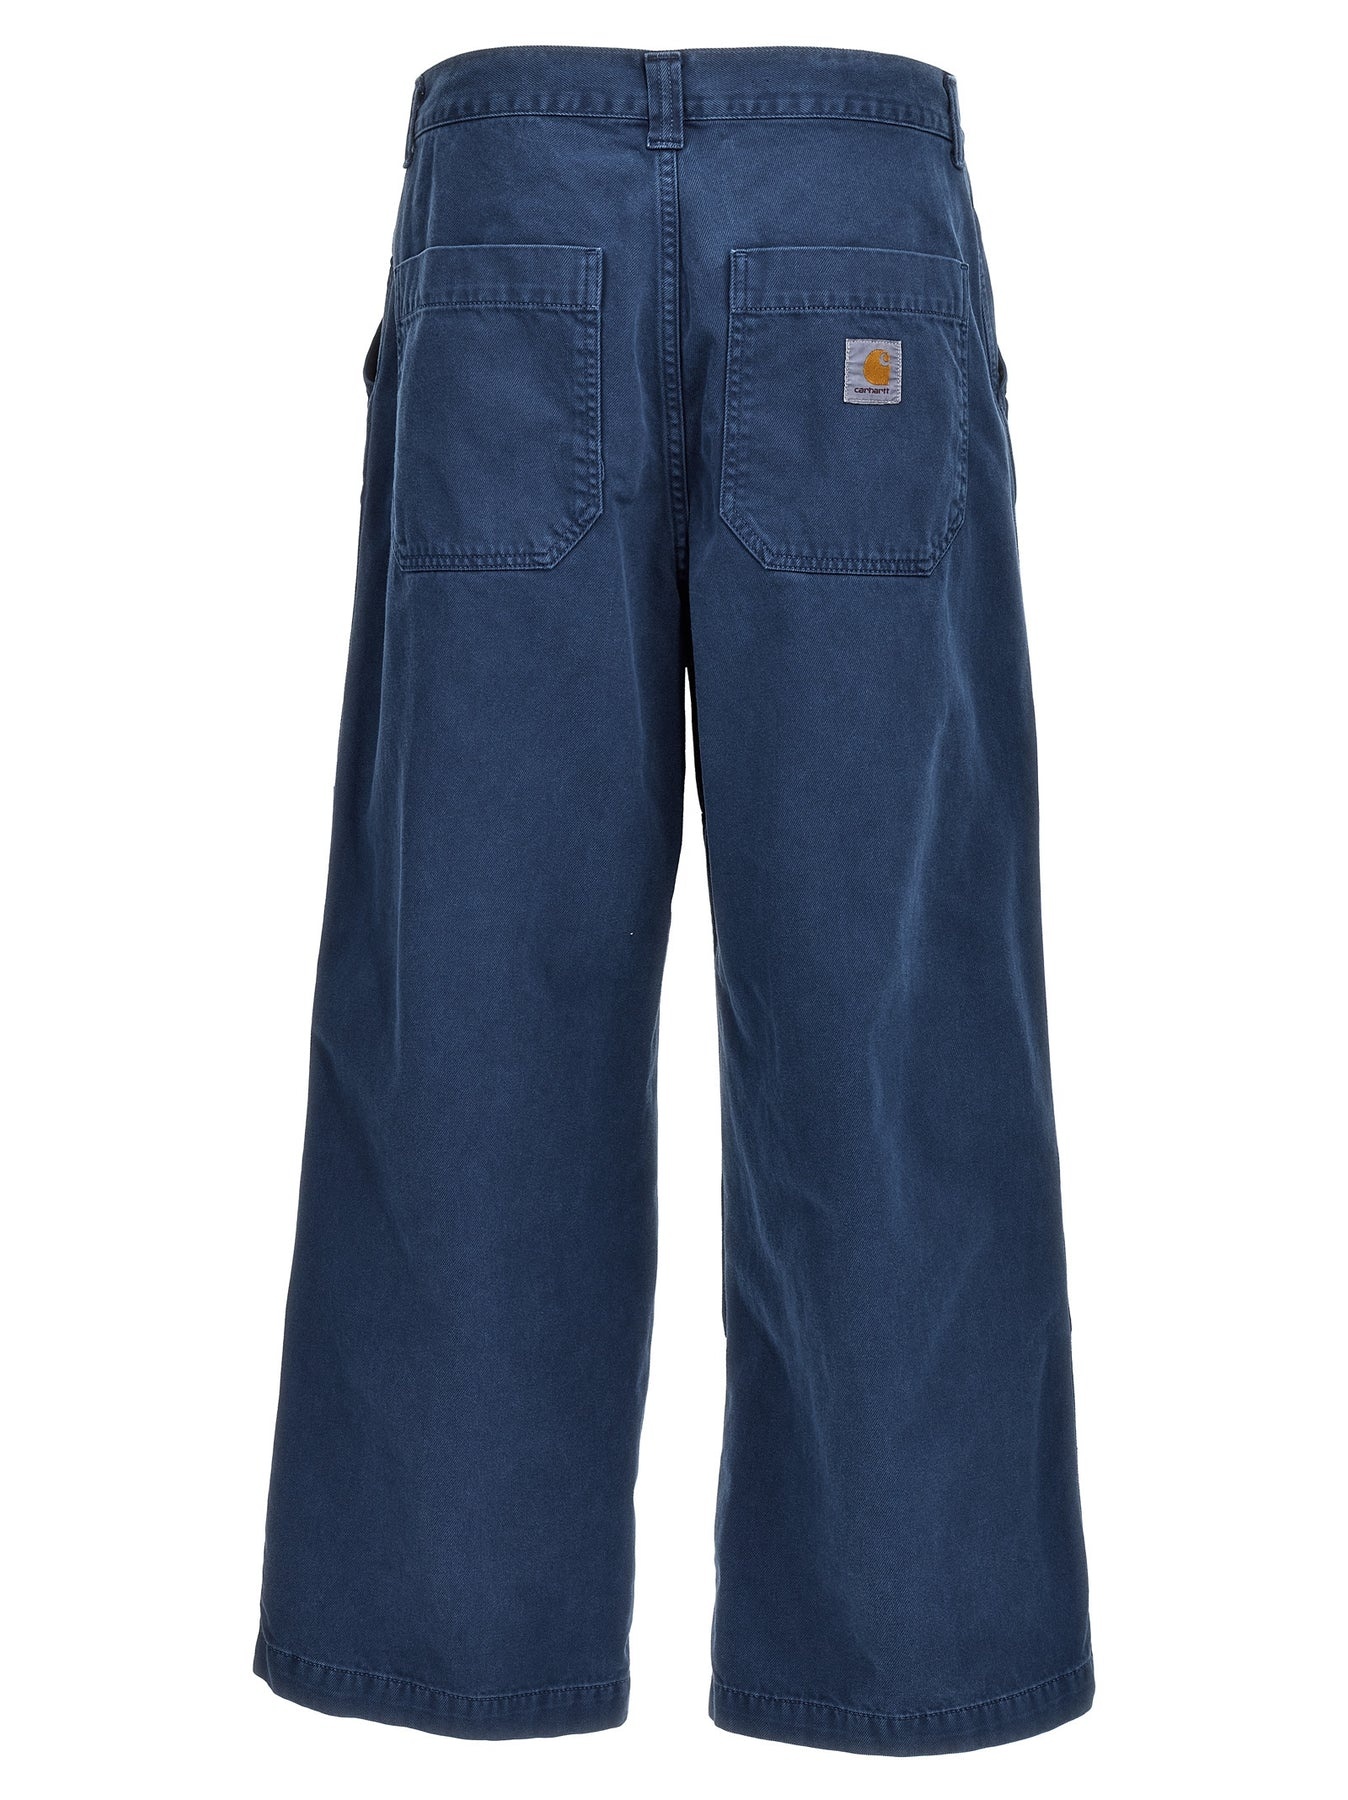 Garrison Pants Blue - 2